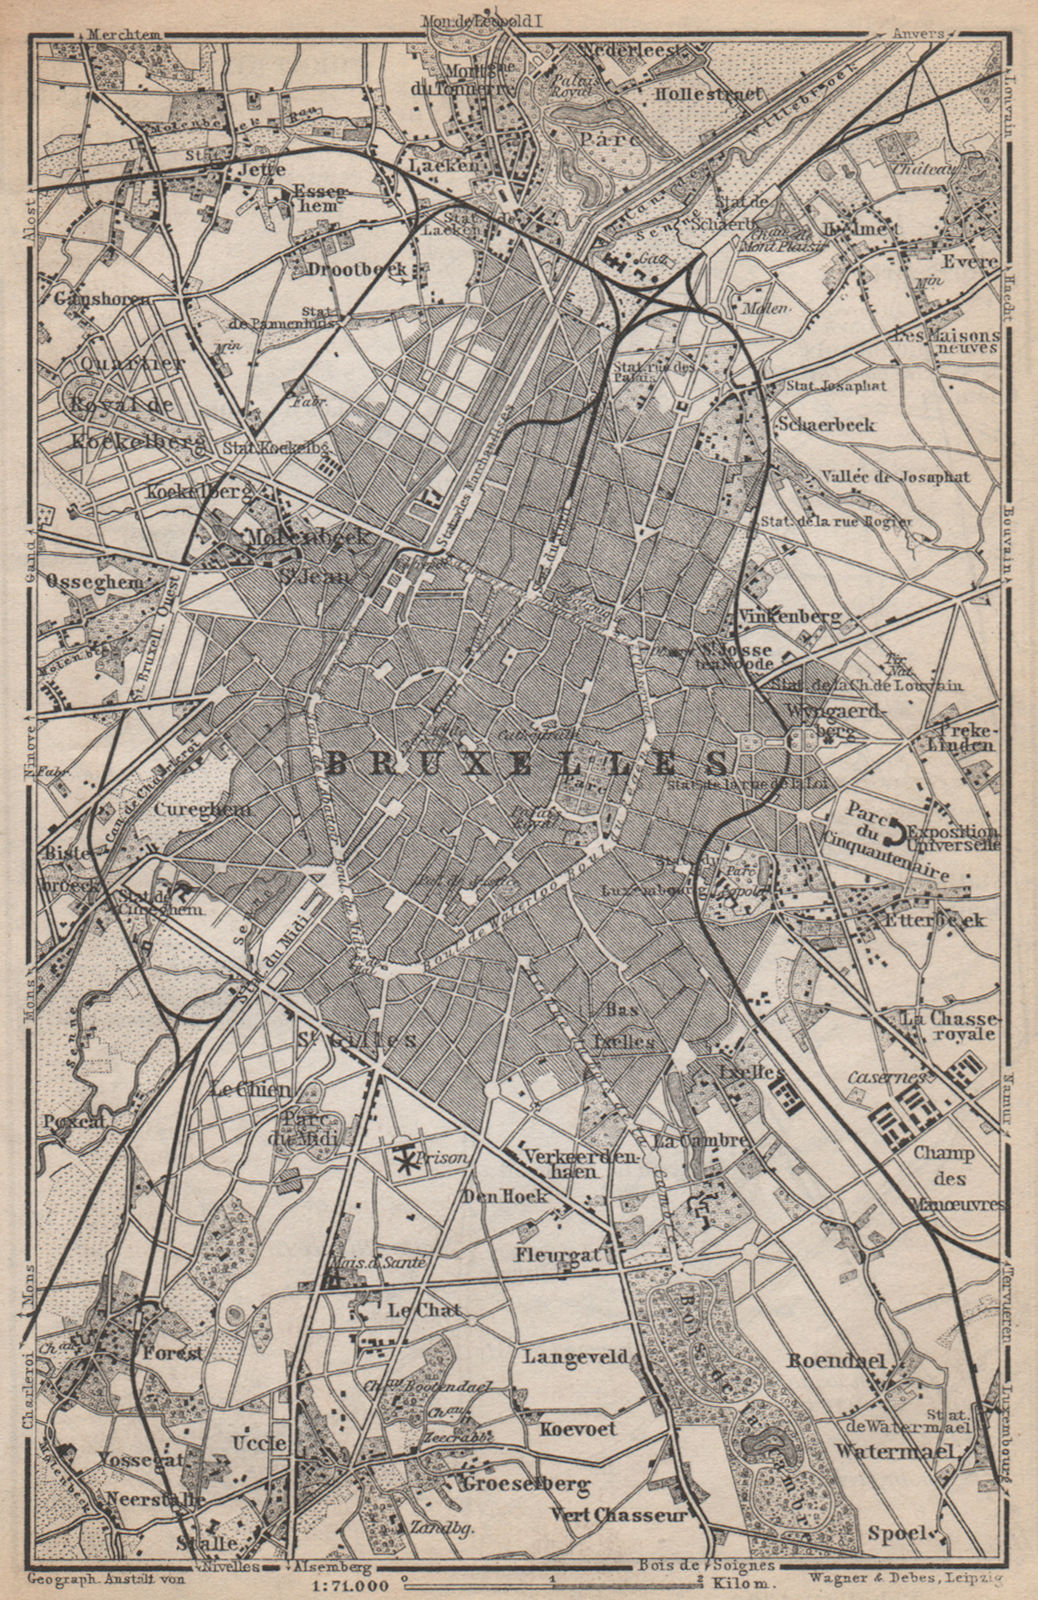 BRUSSELS BRUXELLES BRUSSEL environs plan. Belgium carte. BAEDEKER 1897 old map